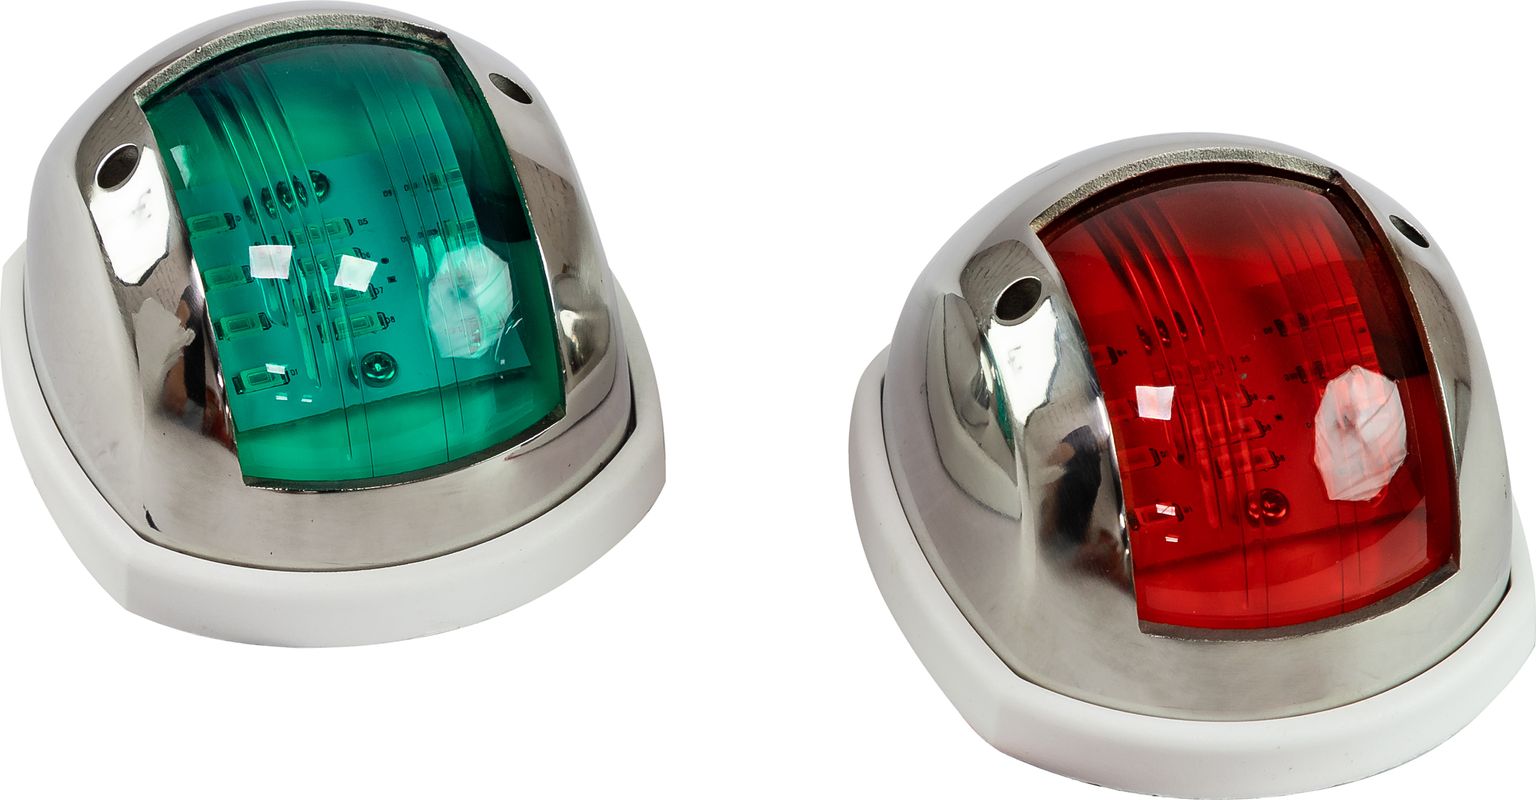 Огни ходовые 89х55 мм комплект (красный, зеленый), LED, нержавеющий корпус LPSDLPTLED0289 огни ходовые светодиодные белый корпус комплект c91002led